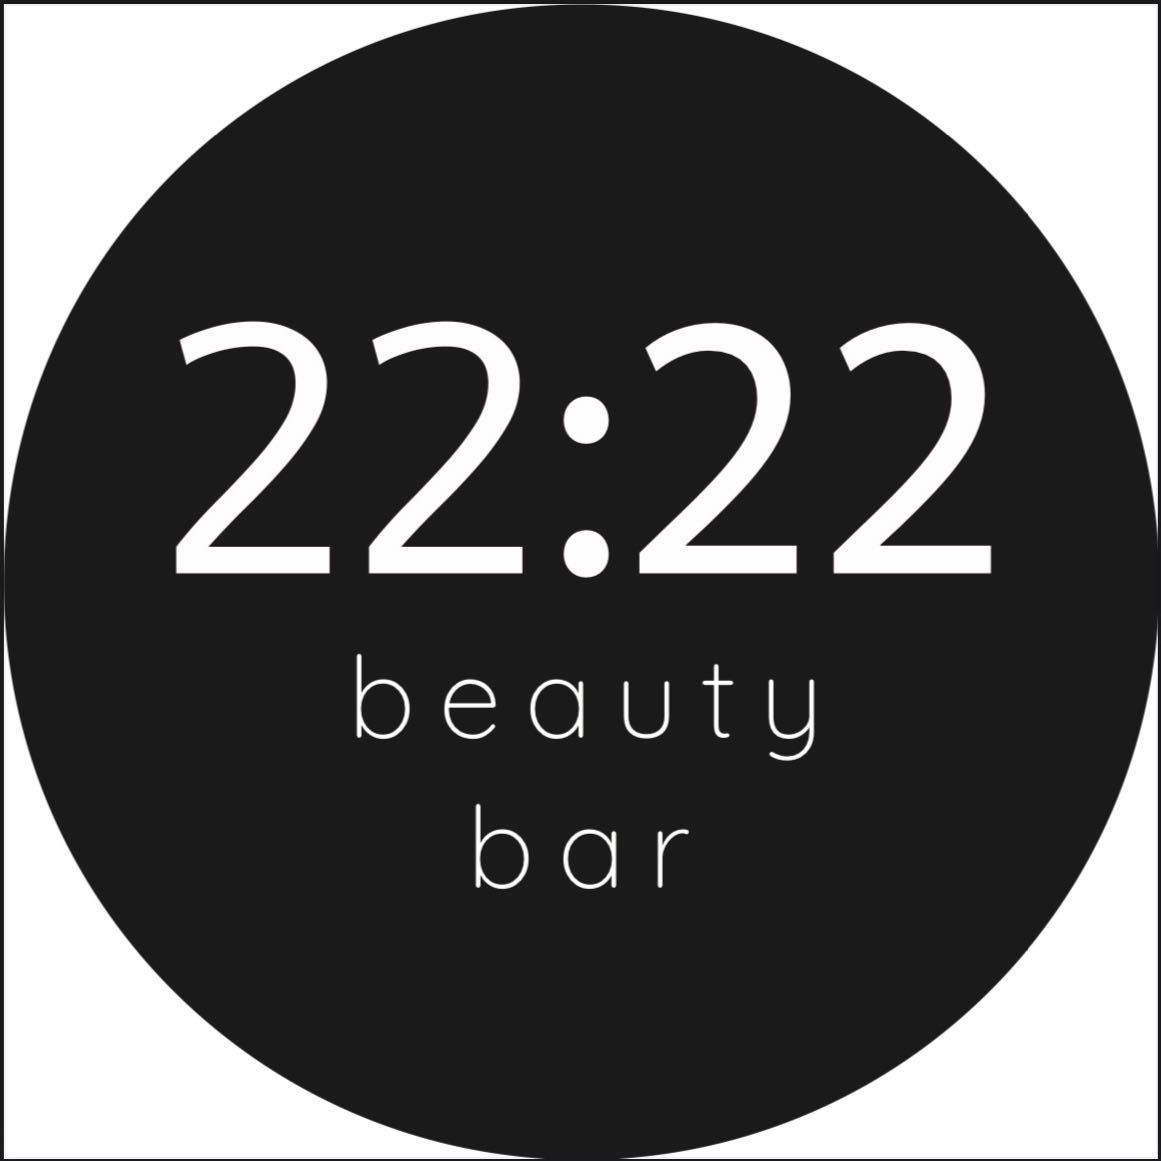 22:22 beauty bar, gen. A. E. Fieldorfa "Nila" 10, 315 (pasaż), 03-984, Warszawa, Praga-Południe